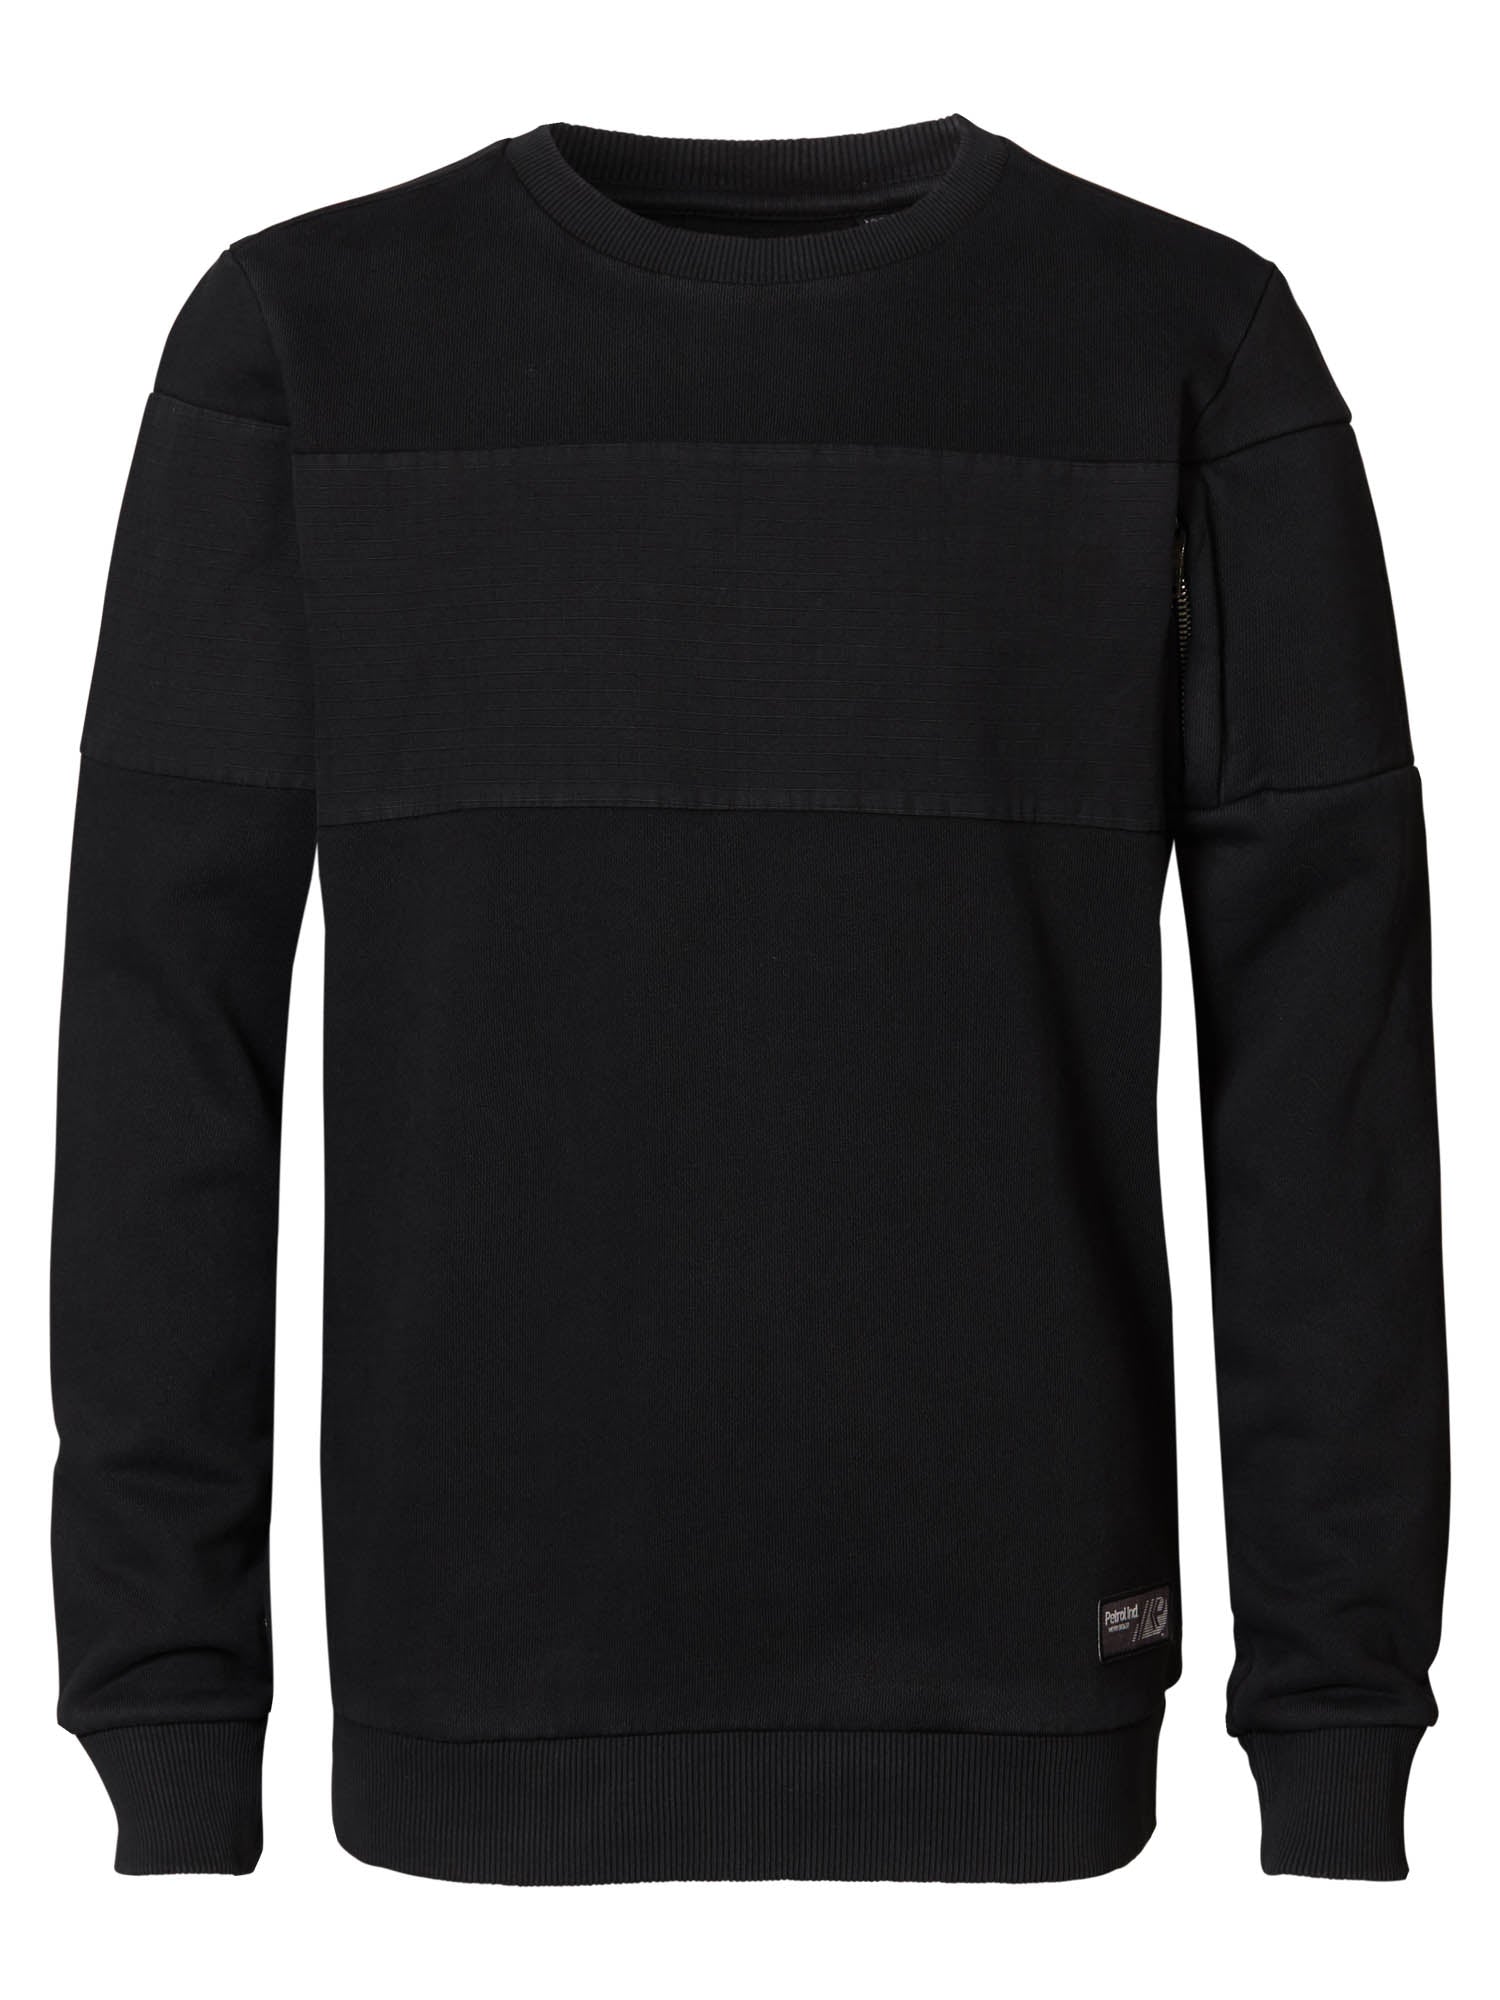 Jongens Sweater R-Neck van Petrol in de kleur Black in maat 176.